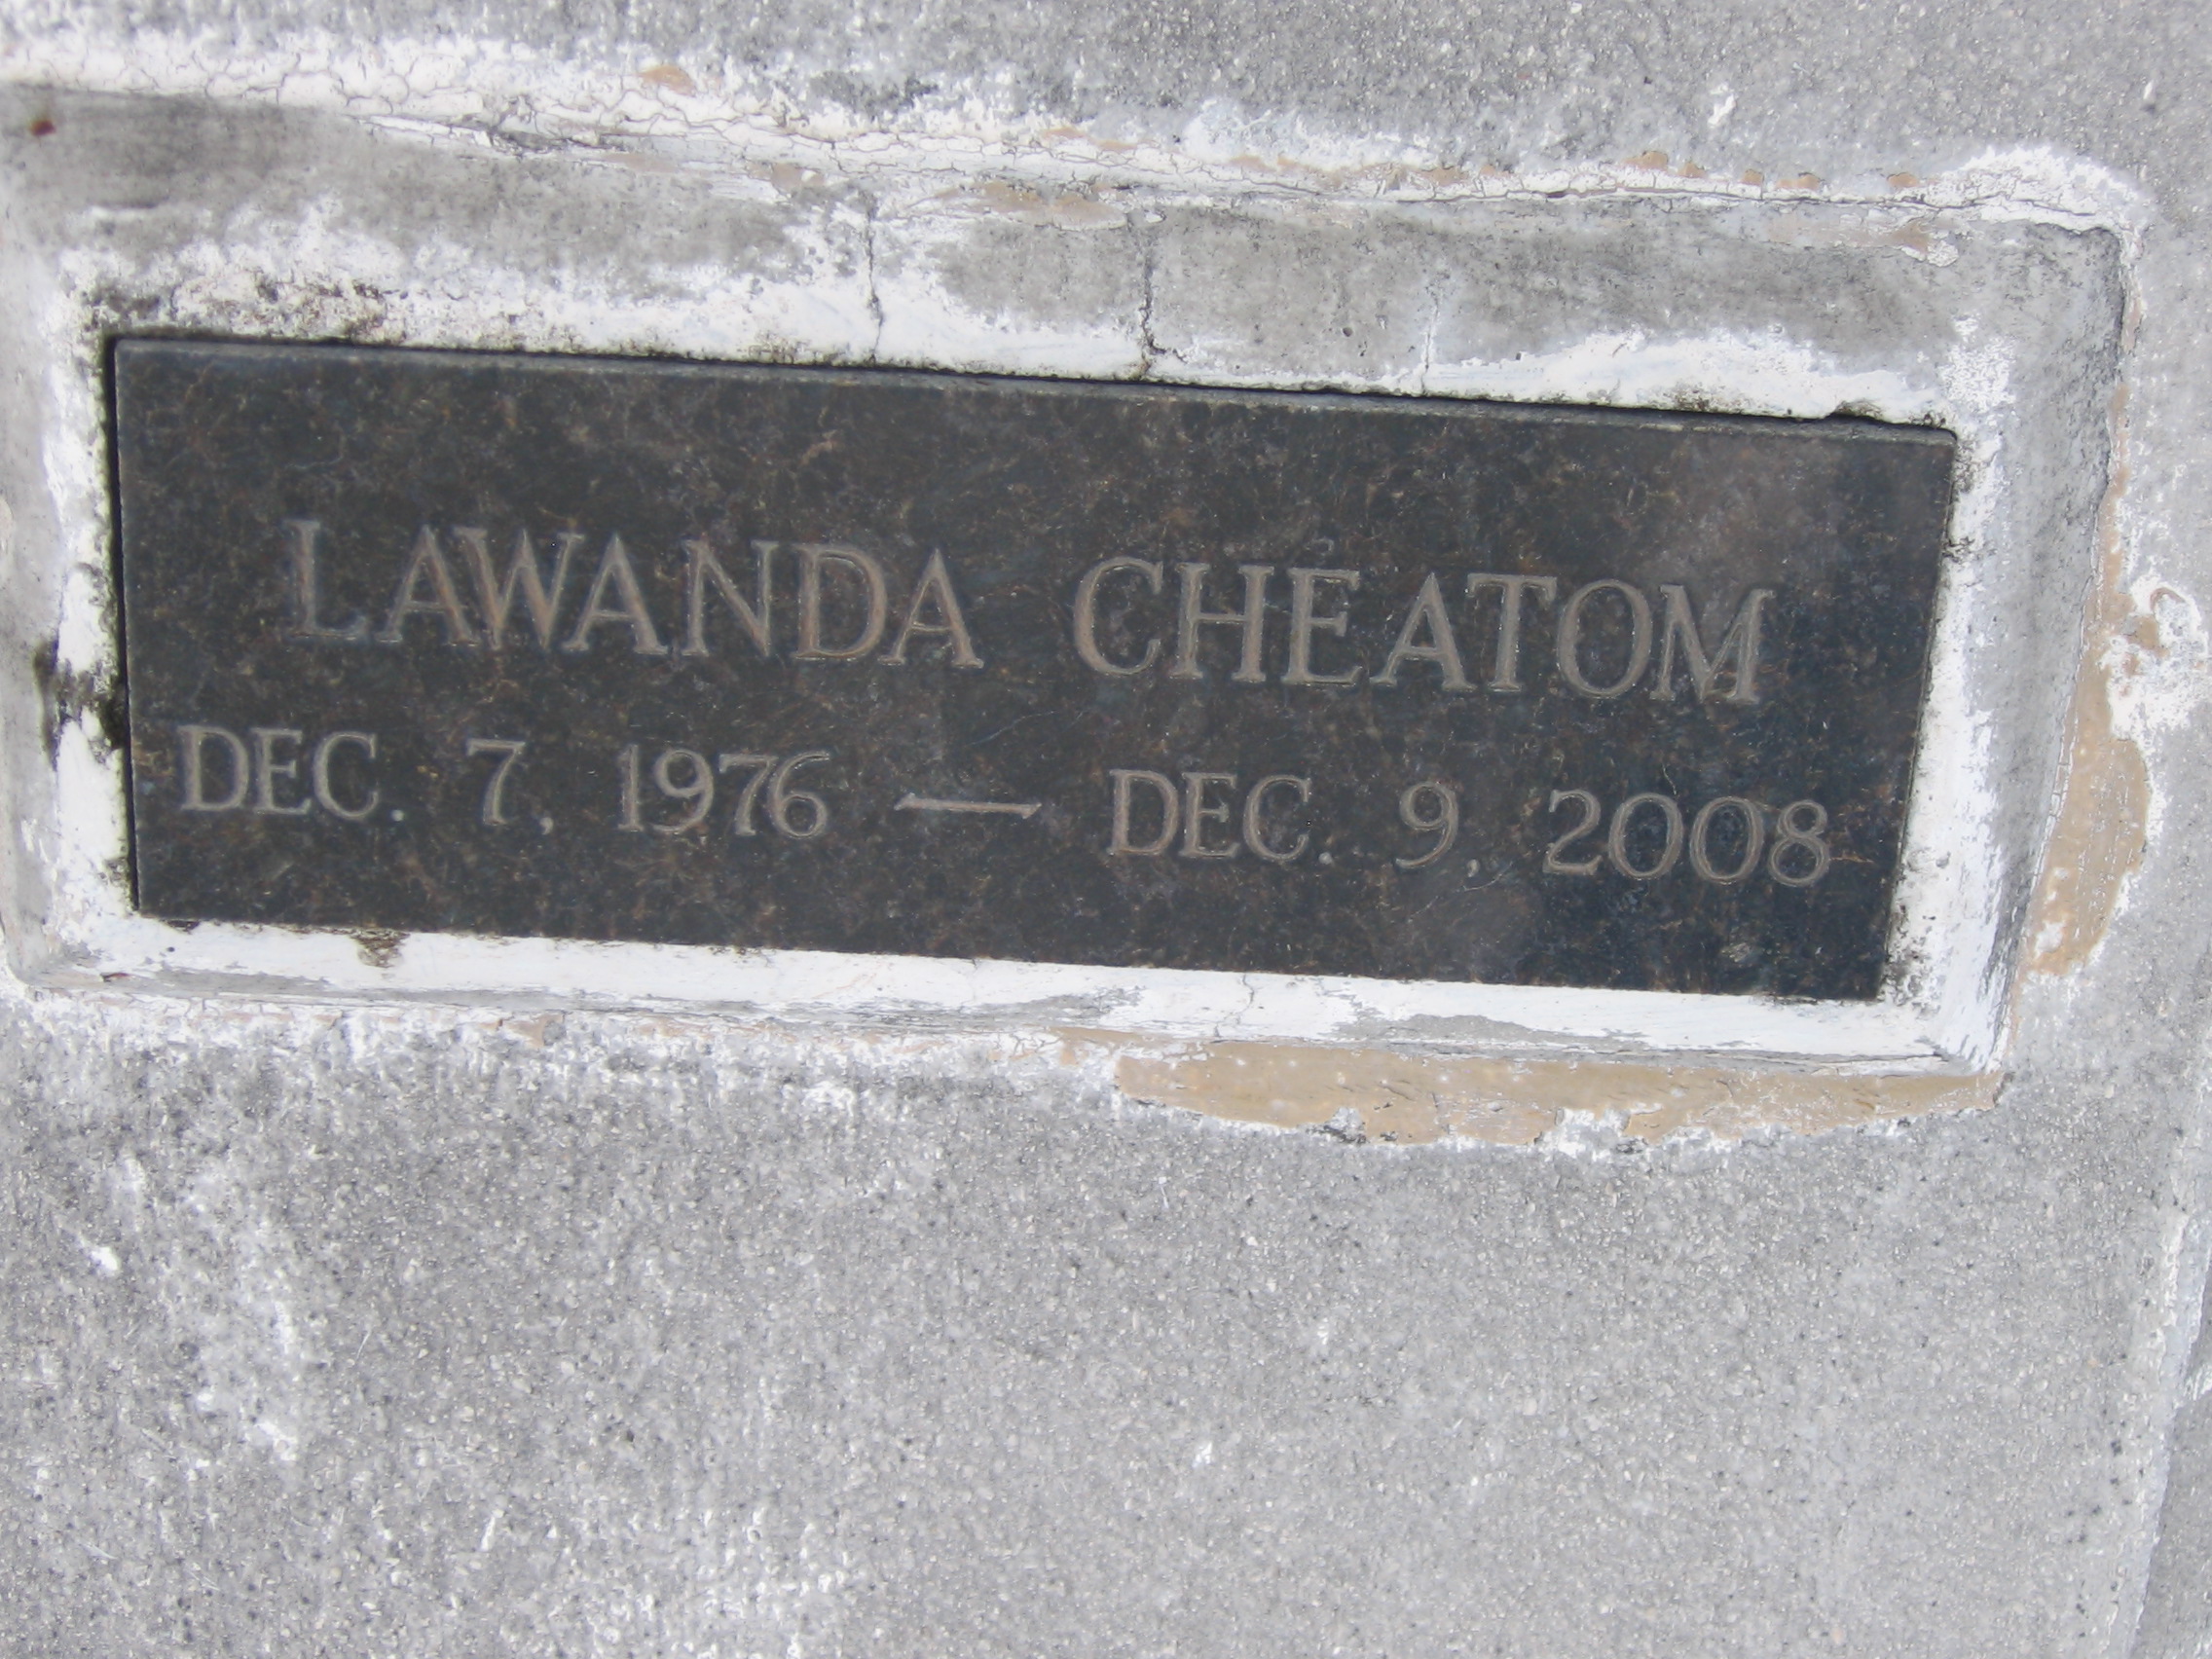 LaWanda Cheatom